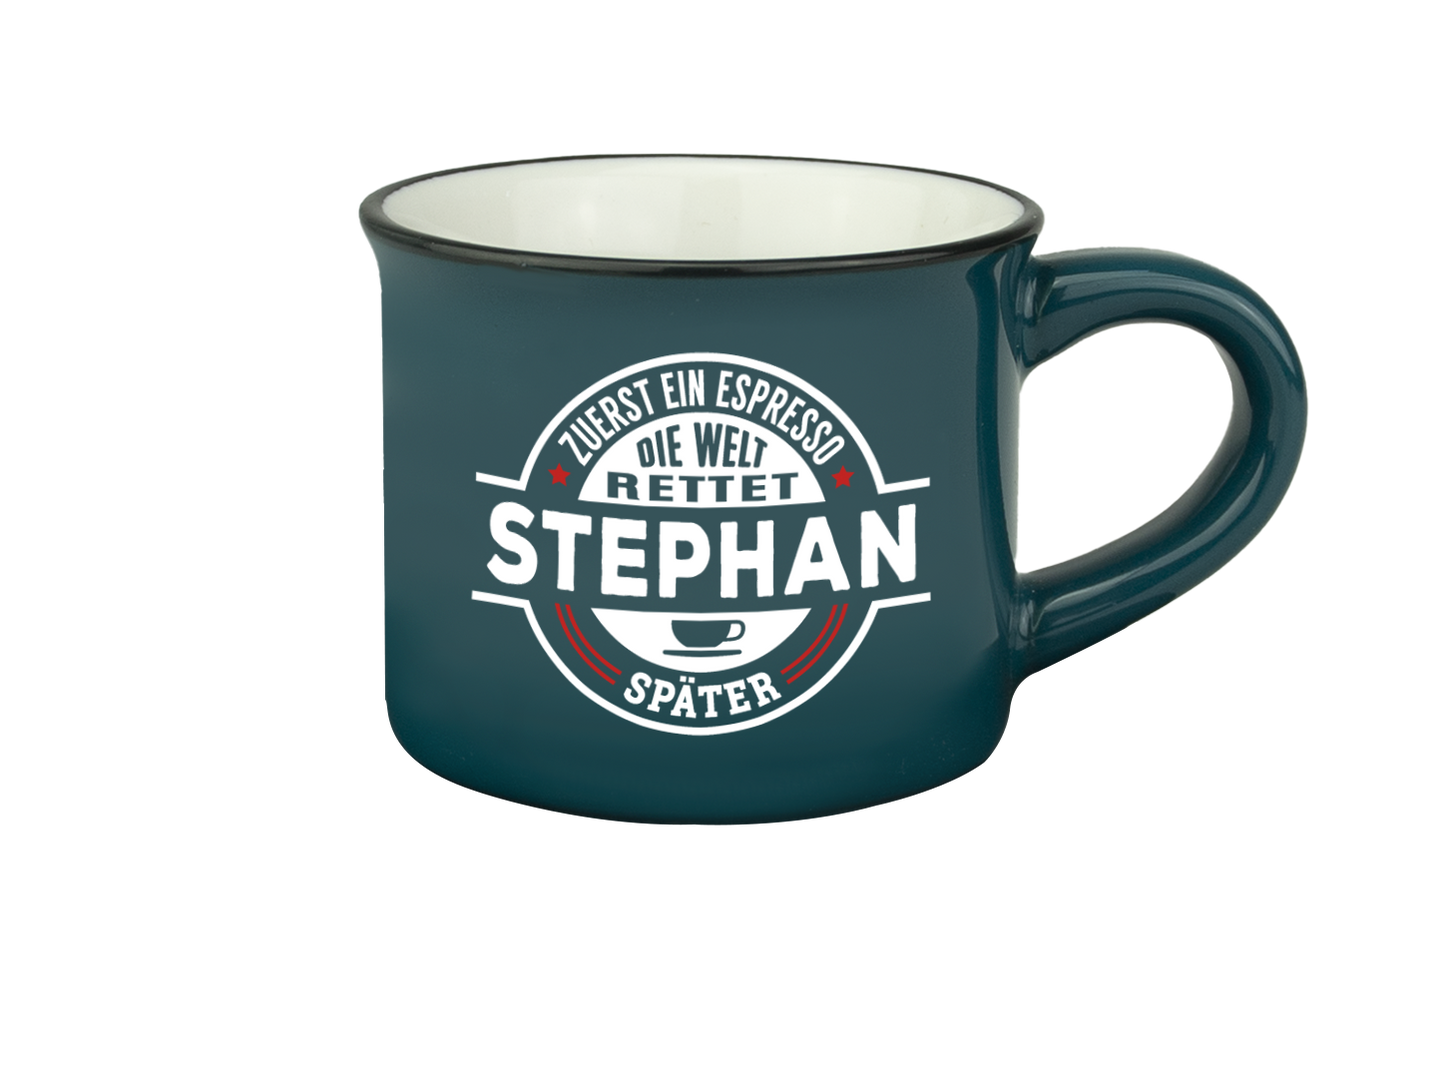 H & H Espresso-Tasse - Zuerst ein Espresso, die Welt rettet Stephan später